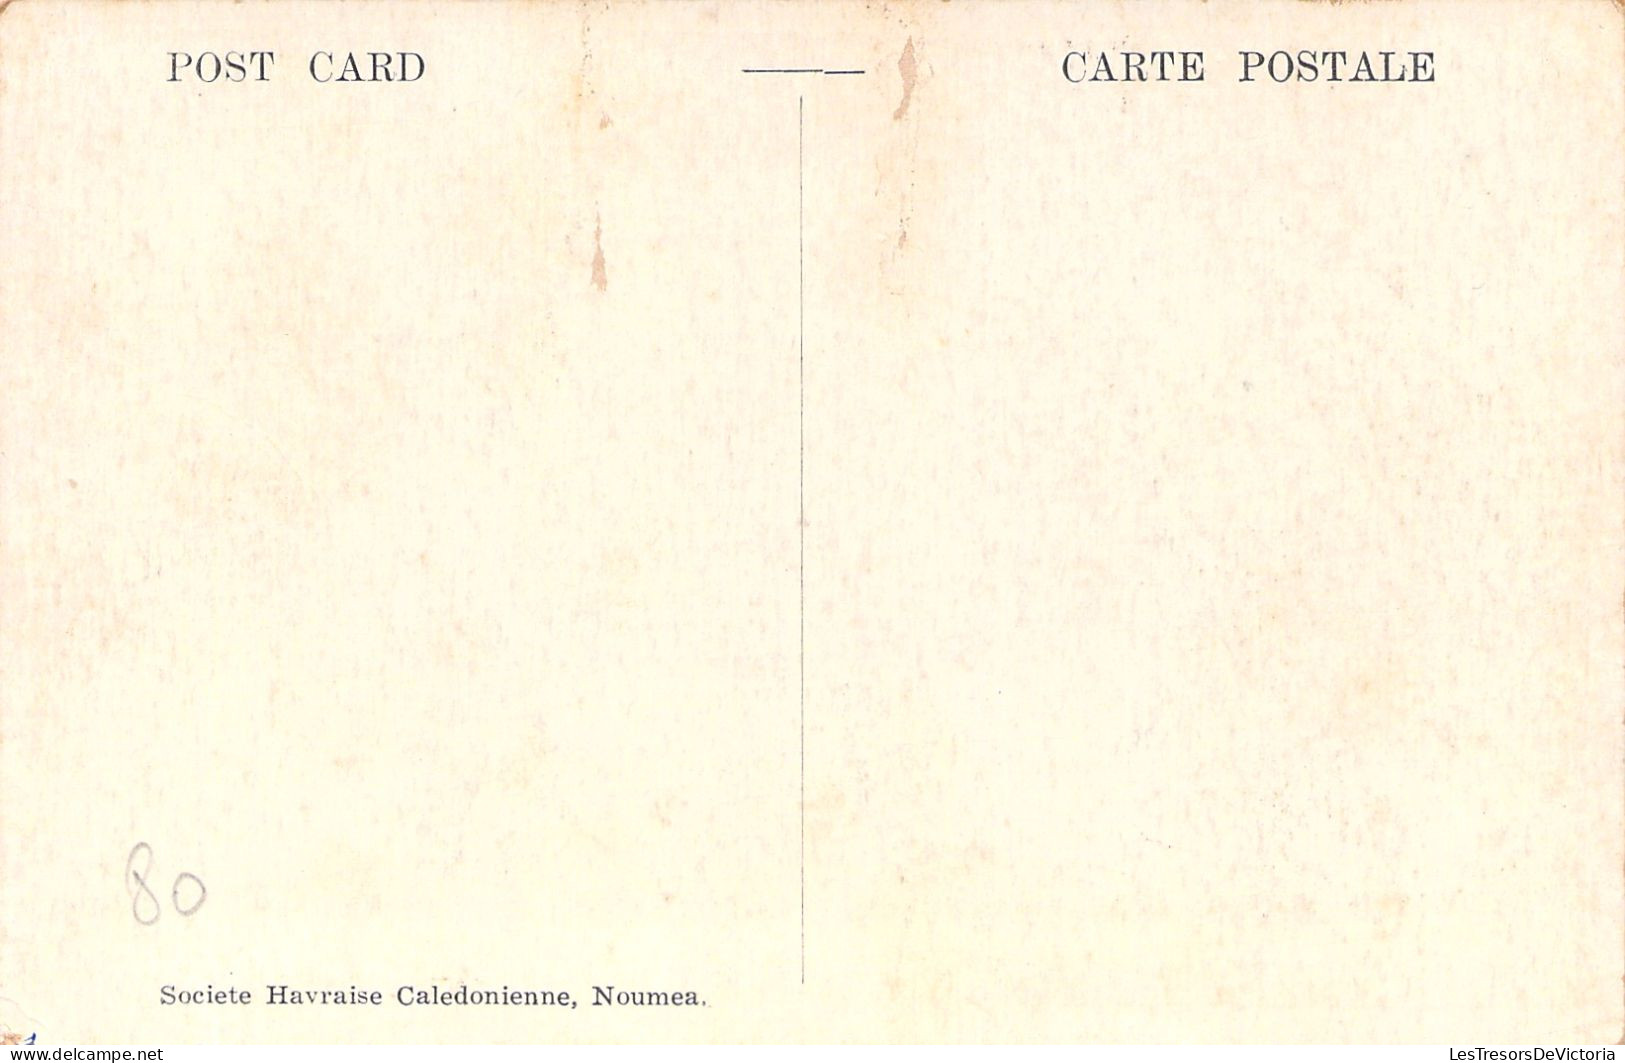 Nouvelle Calédonie  - New Caledonia - Voiture A Boeufs - Bullock Cart - Carte Postale Ancienne - Nouvelle-Calédonie